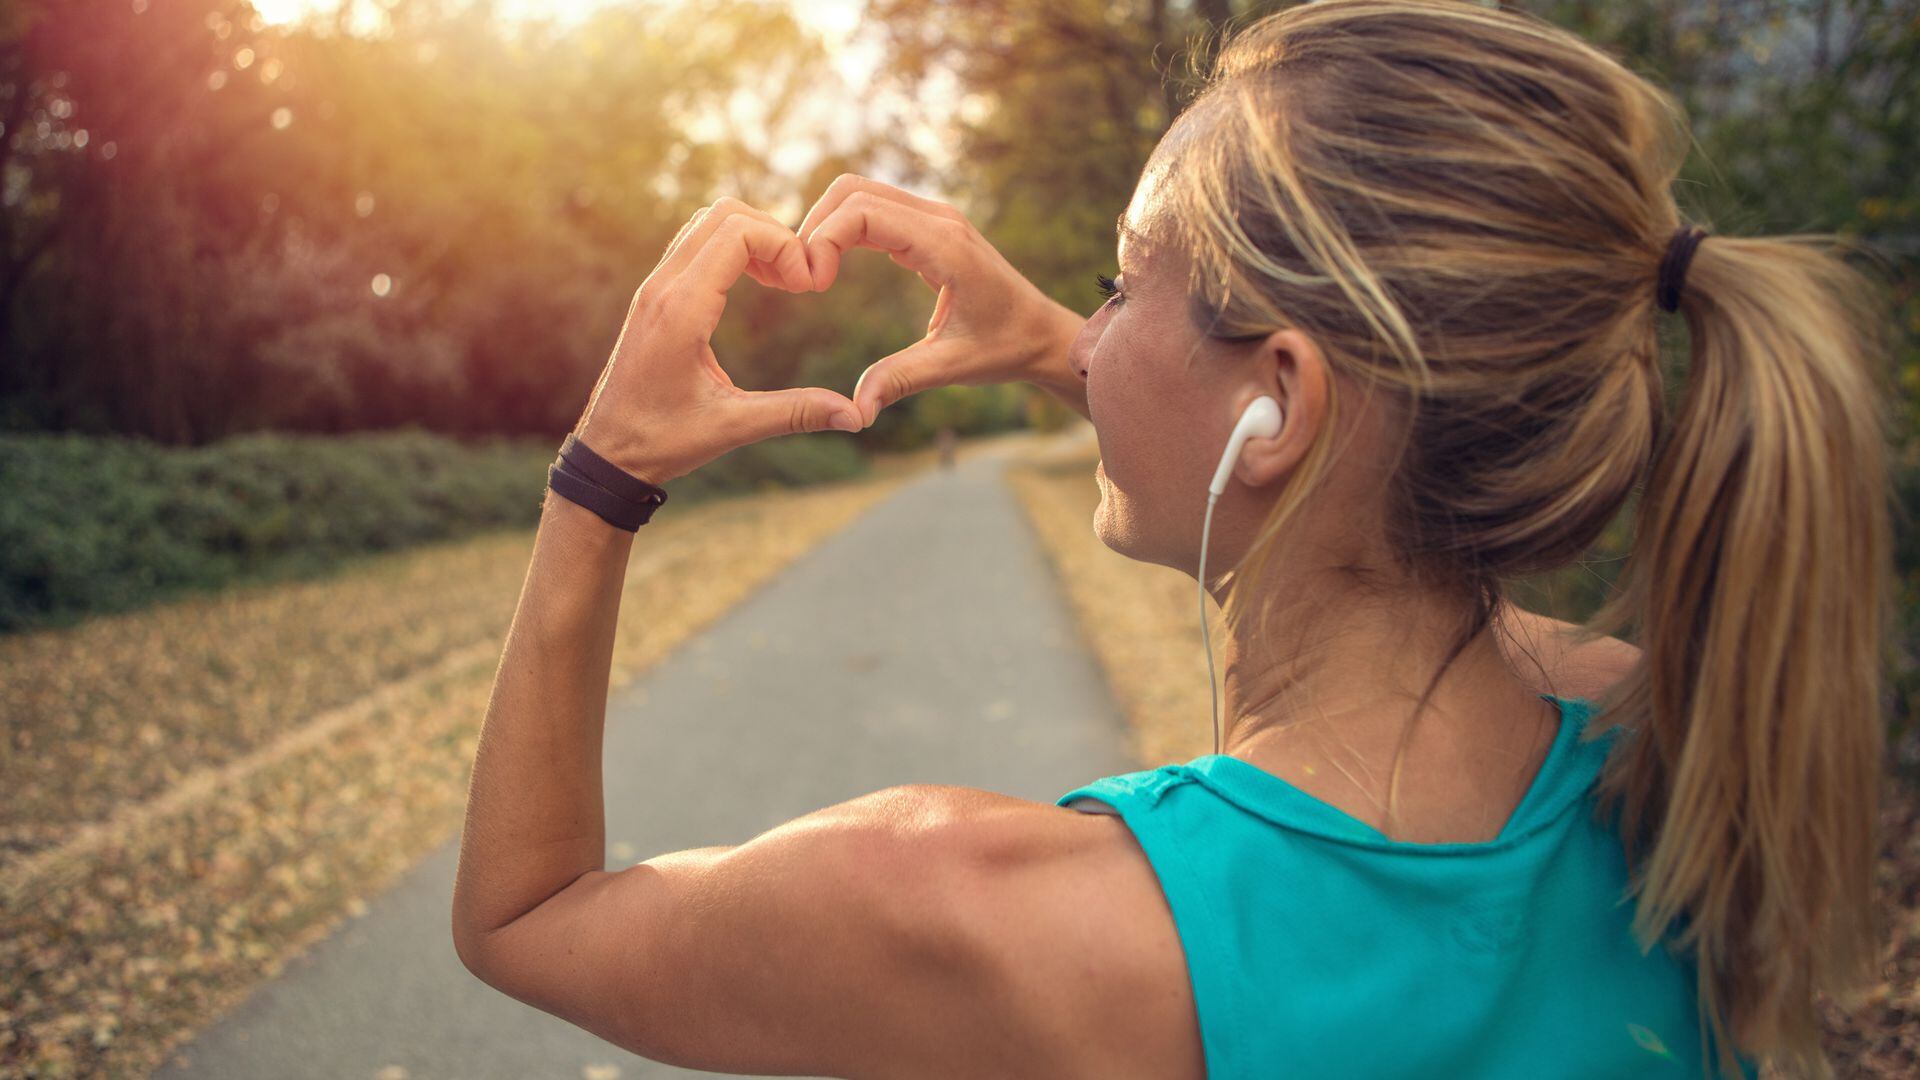 Conozca algunos ejercicios recomendados para prevenir enfermedades cardiovasculares.